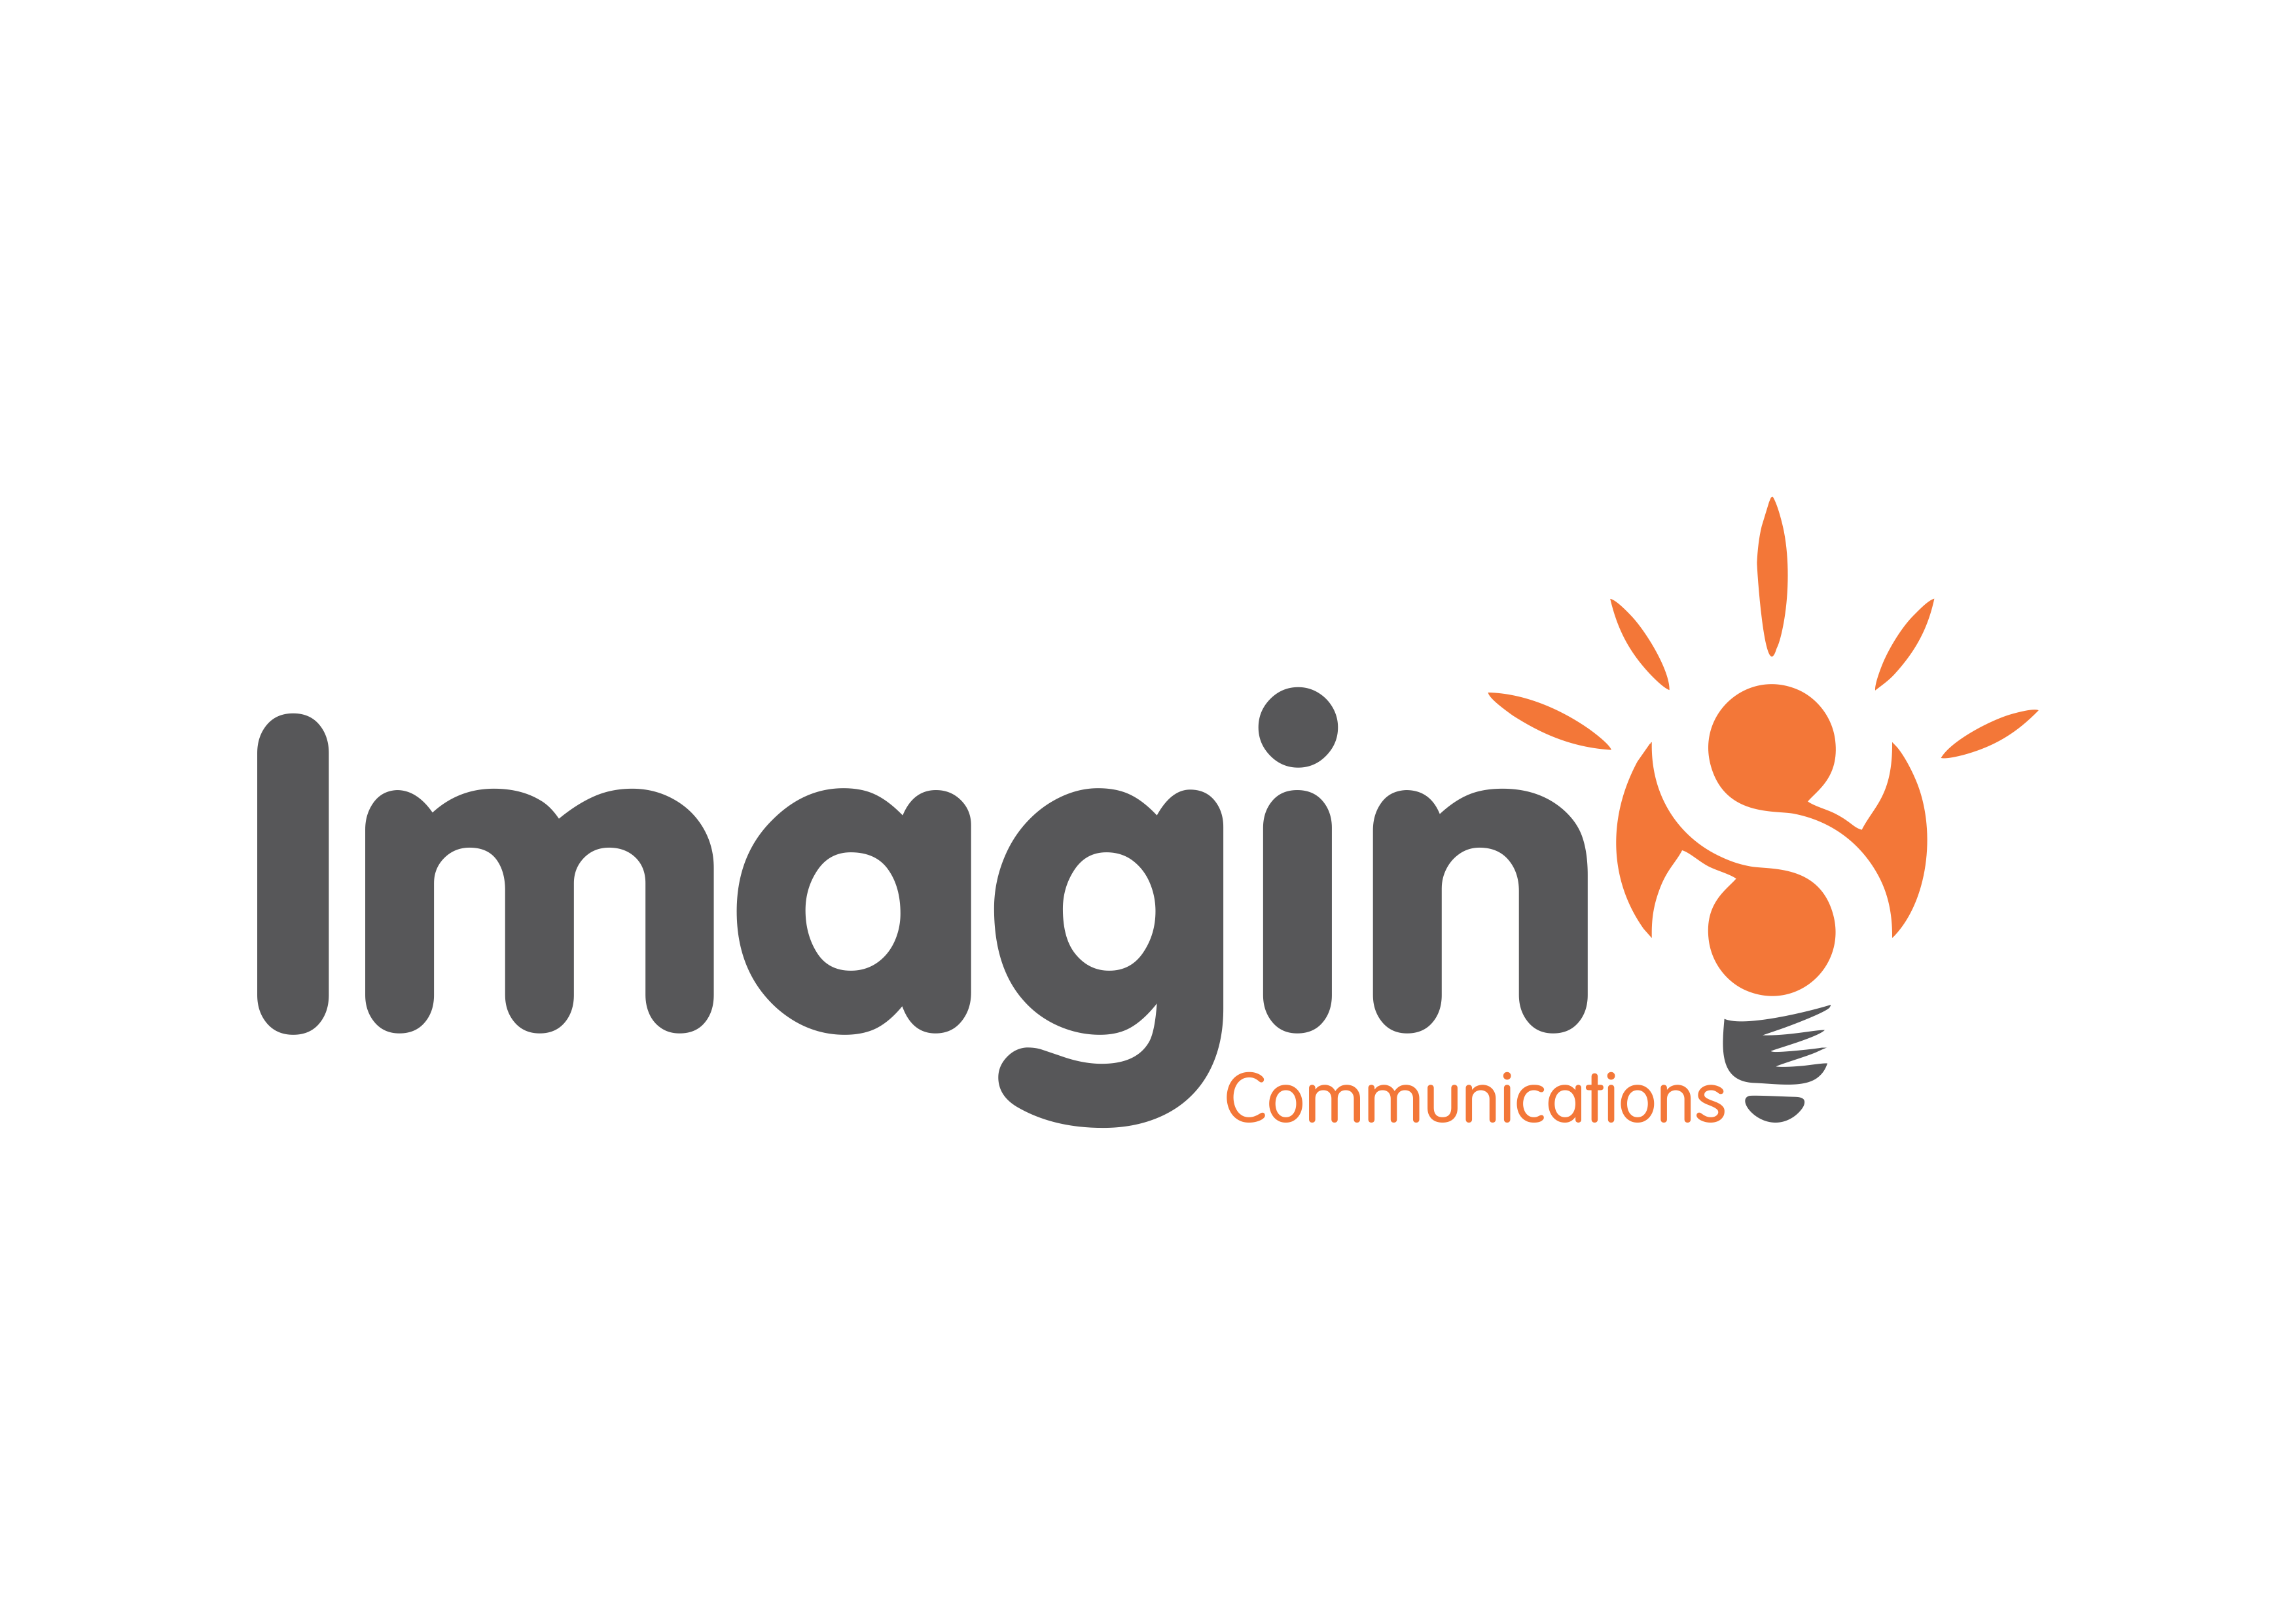 Imagin8 Communications